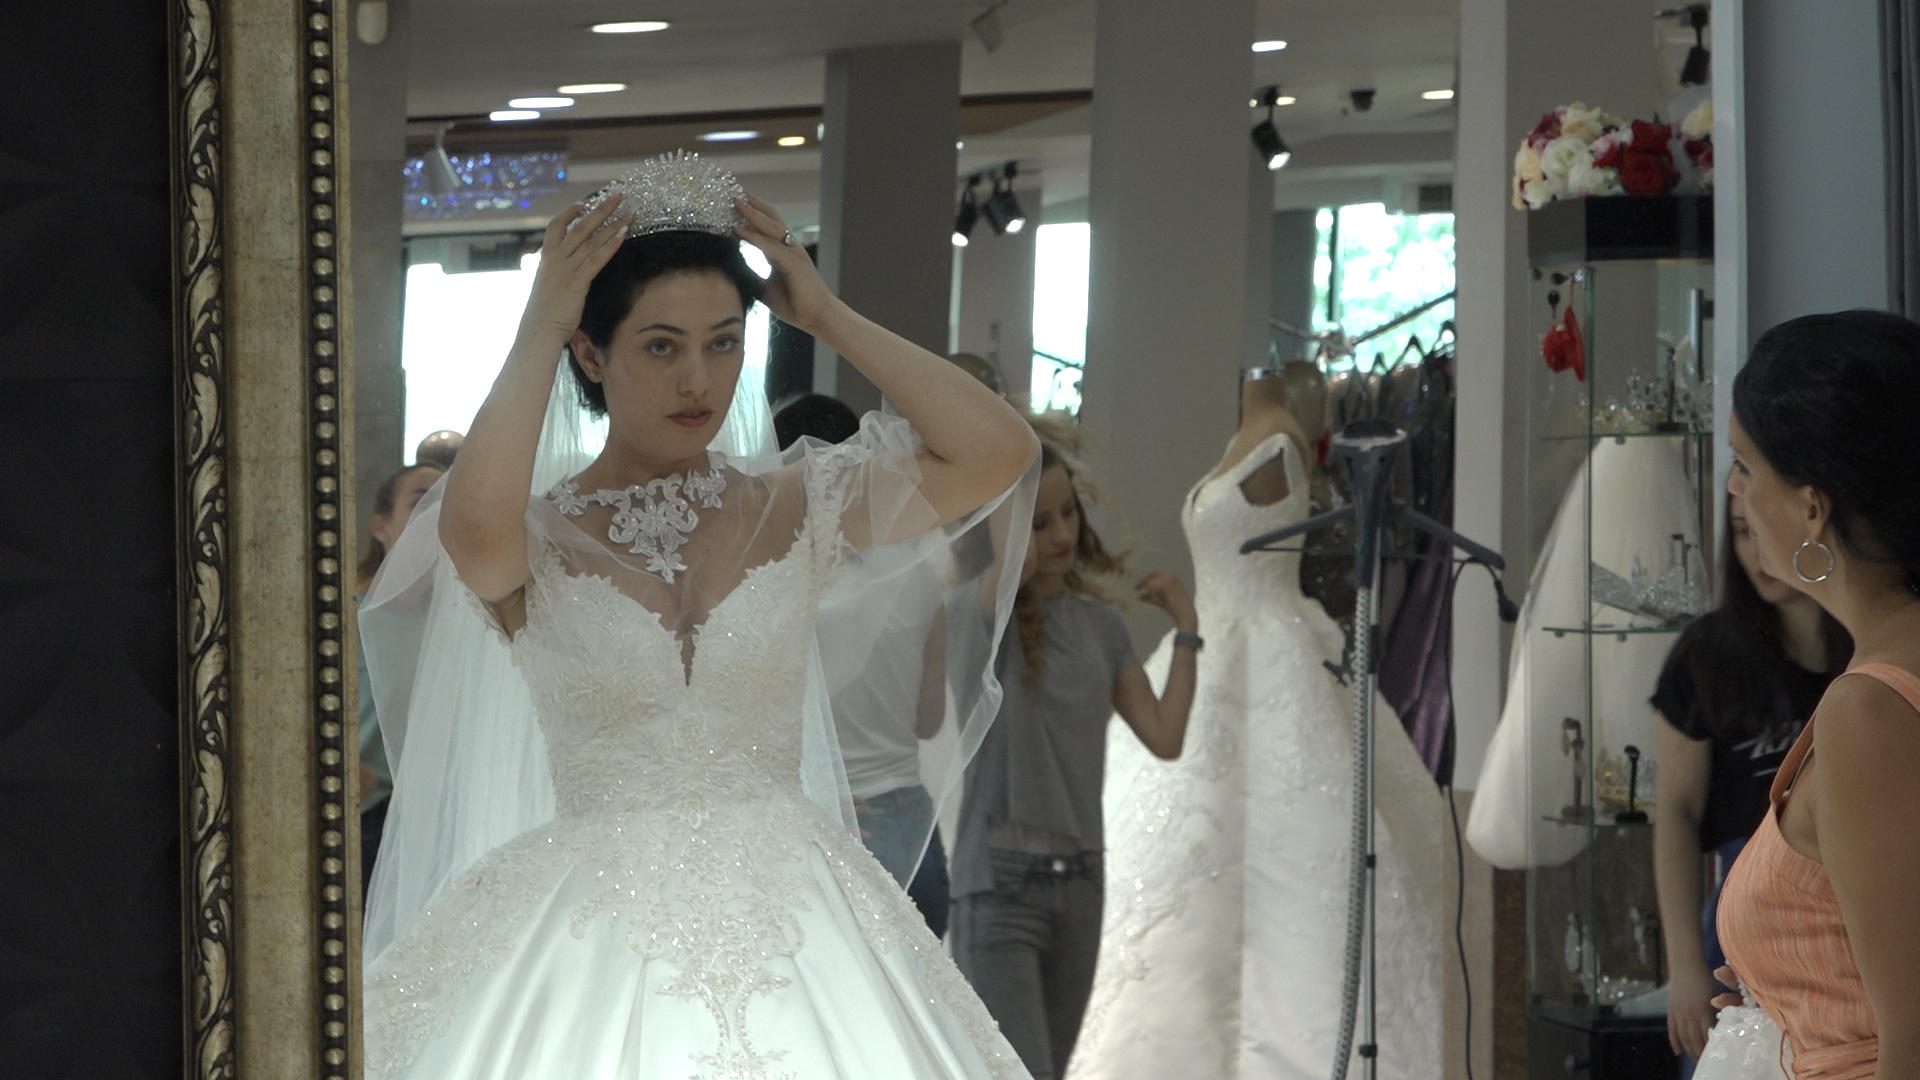 Donna in abito da sposa che si sta sistemando il velo davanti a uno specchio.